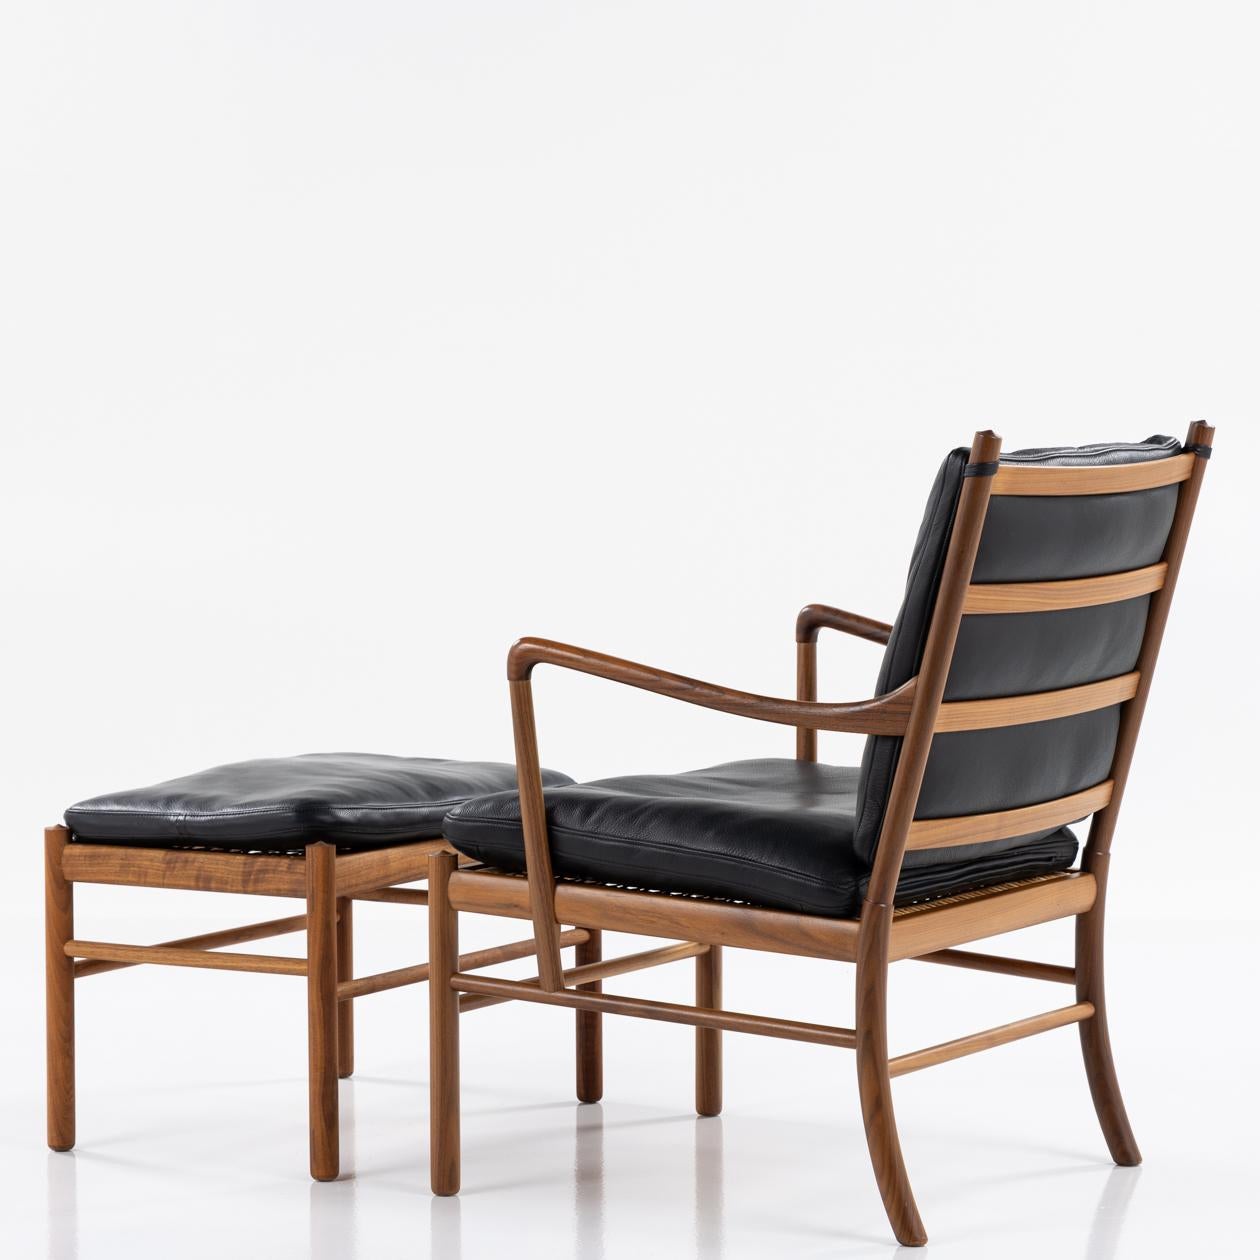 PJ 149 - 'Colonial Chair' aus Nussbaum und schwarzem Leder mit passendem Hocker. Von Ole Wanscher / P. J Möbel